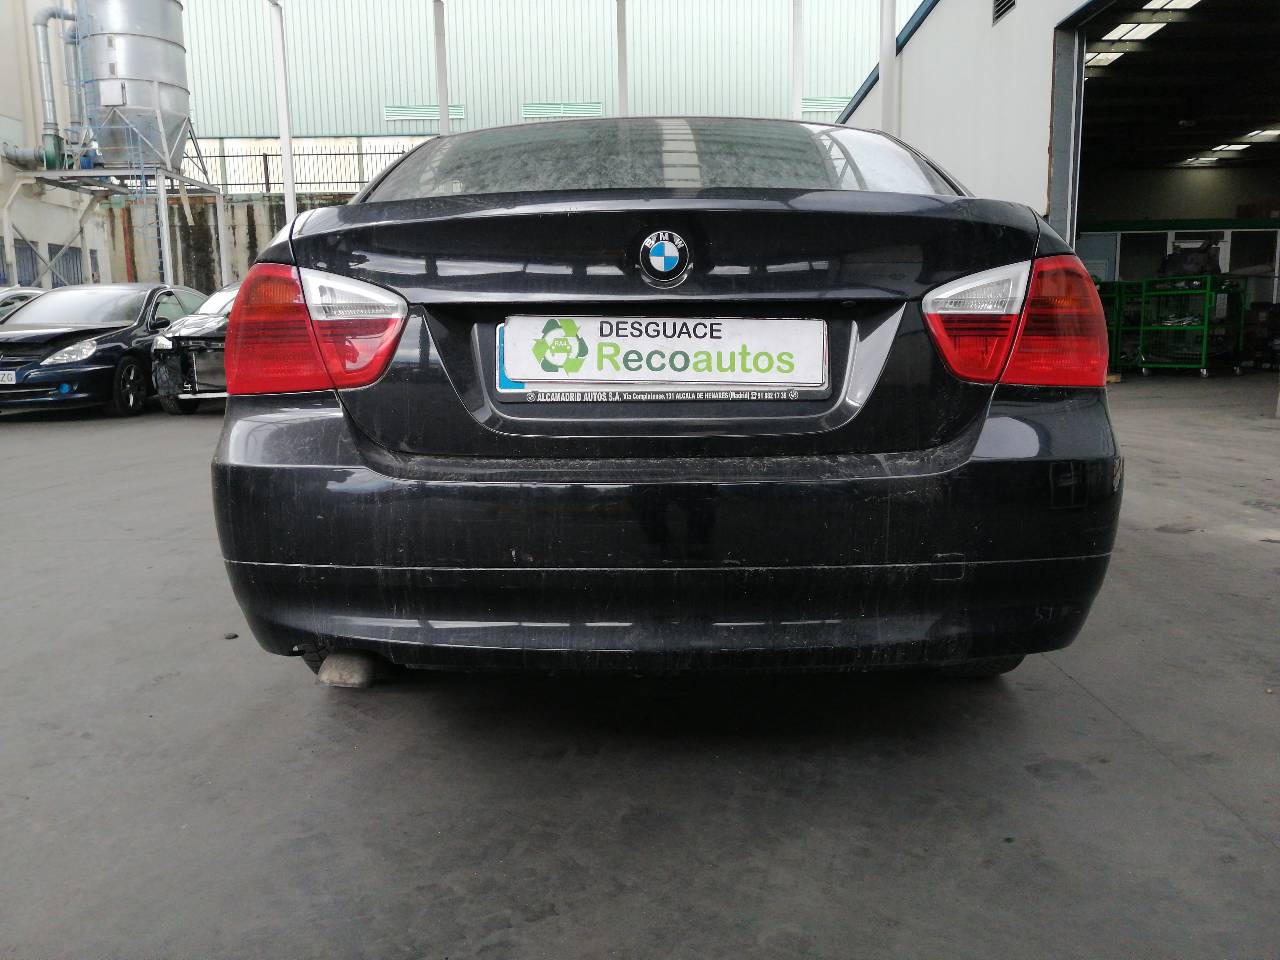 BMW 3 Series E90/E91/E92/E93 (2004-2013) Rear Left Door Molding 51429152359, 4PUERTAS 23753035